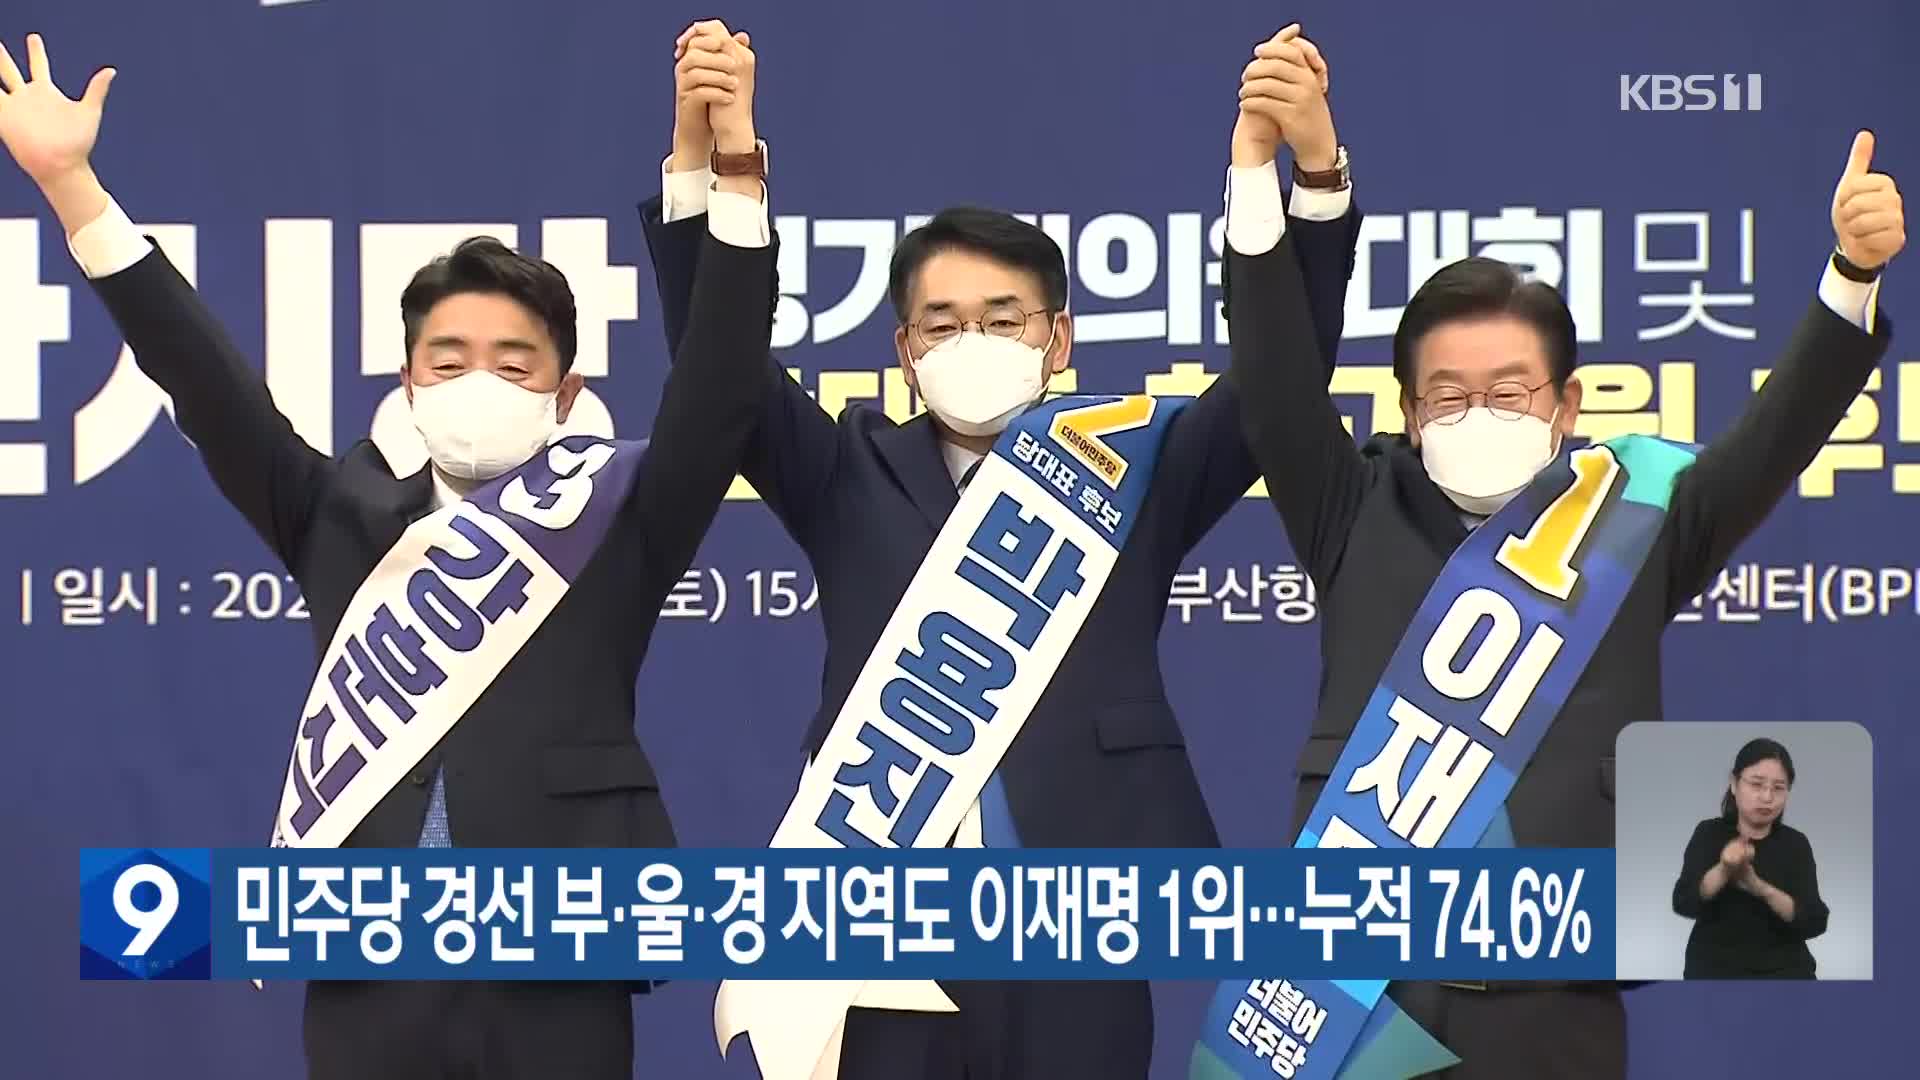 민주당 경선 부·울·경지역도 이재명 1위…누적 74.6%